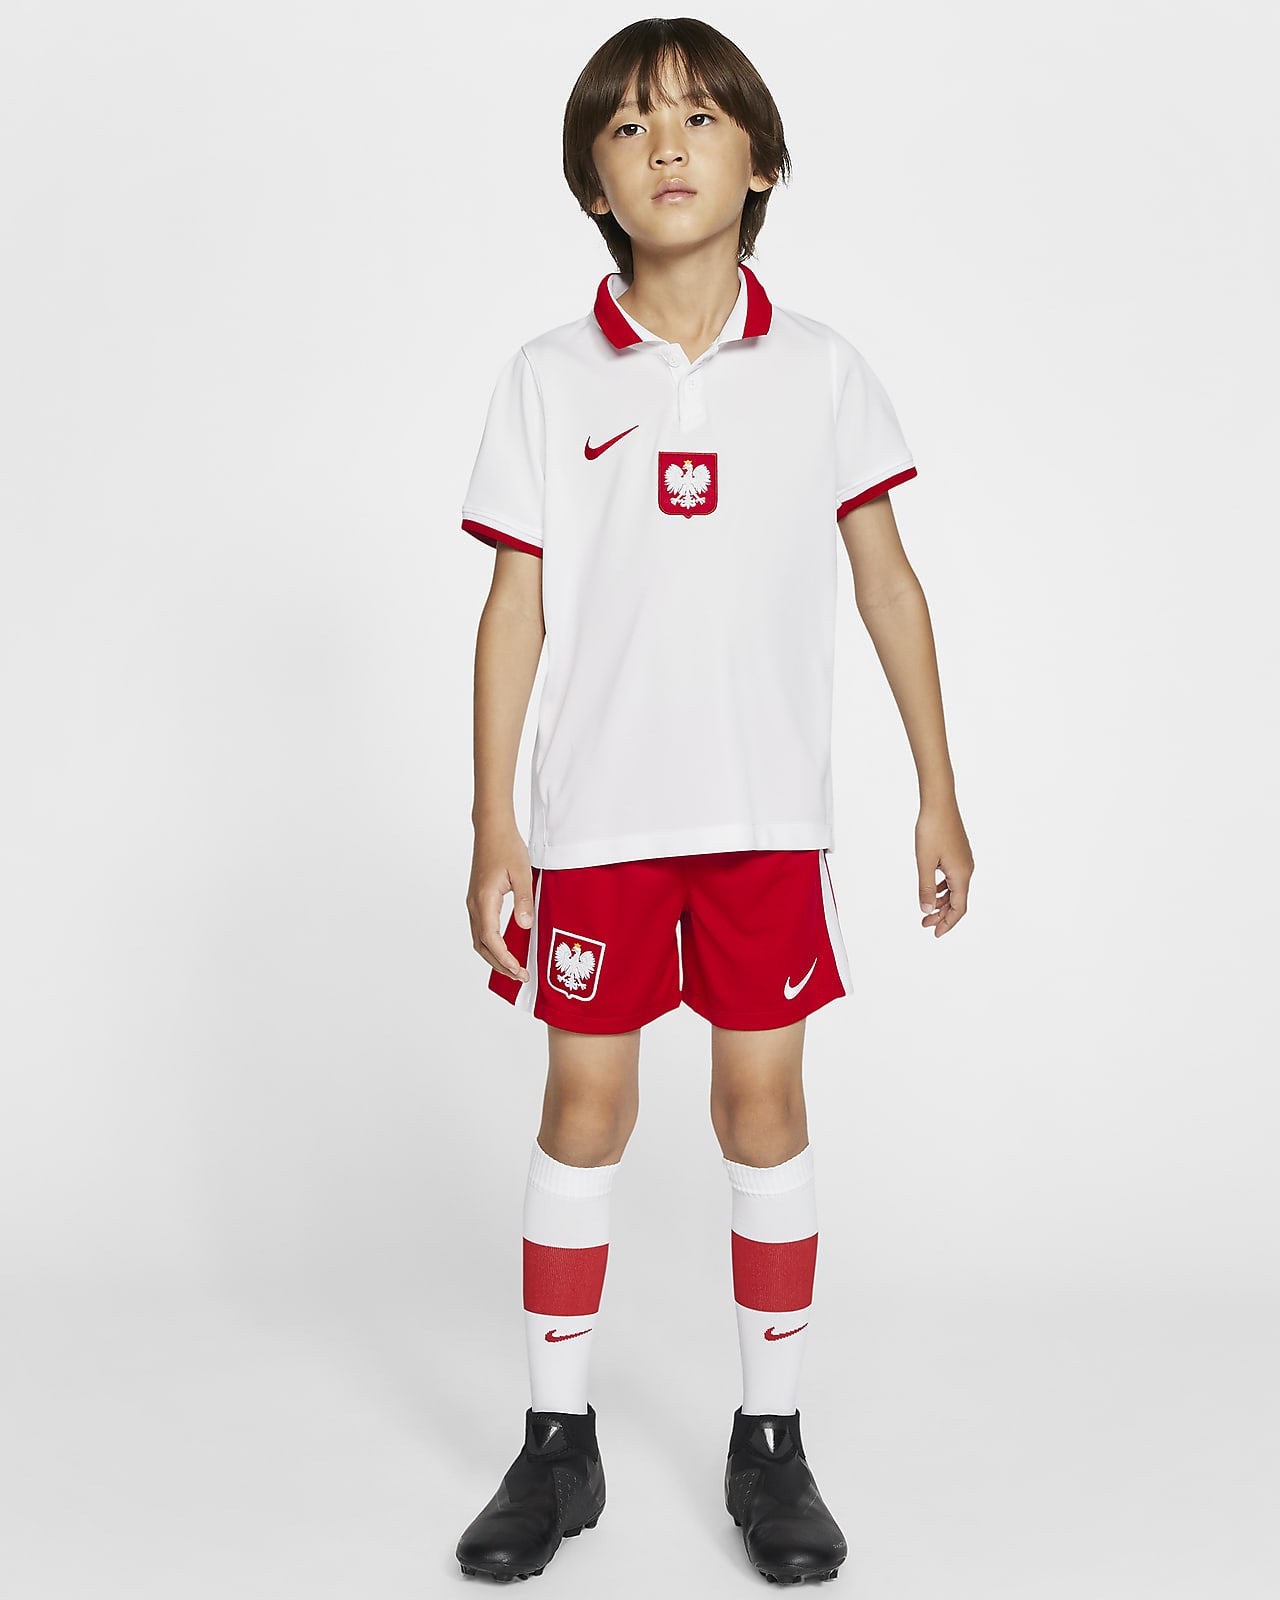 Domácí fotbalová souprava Polsko 2020 pro malé děti